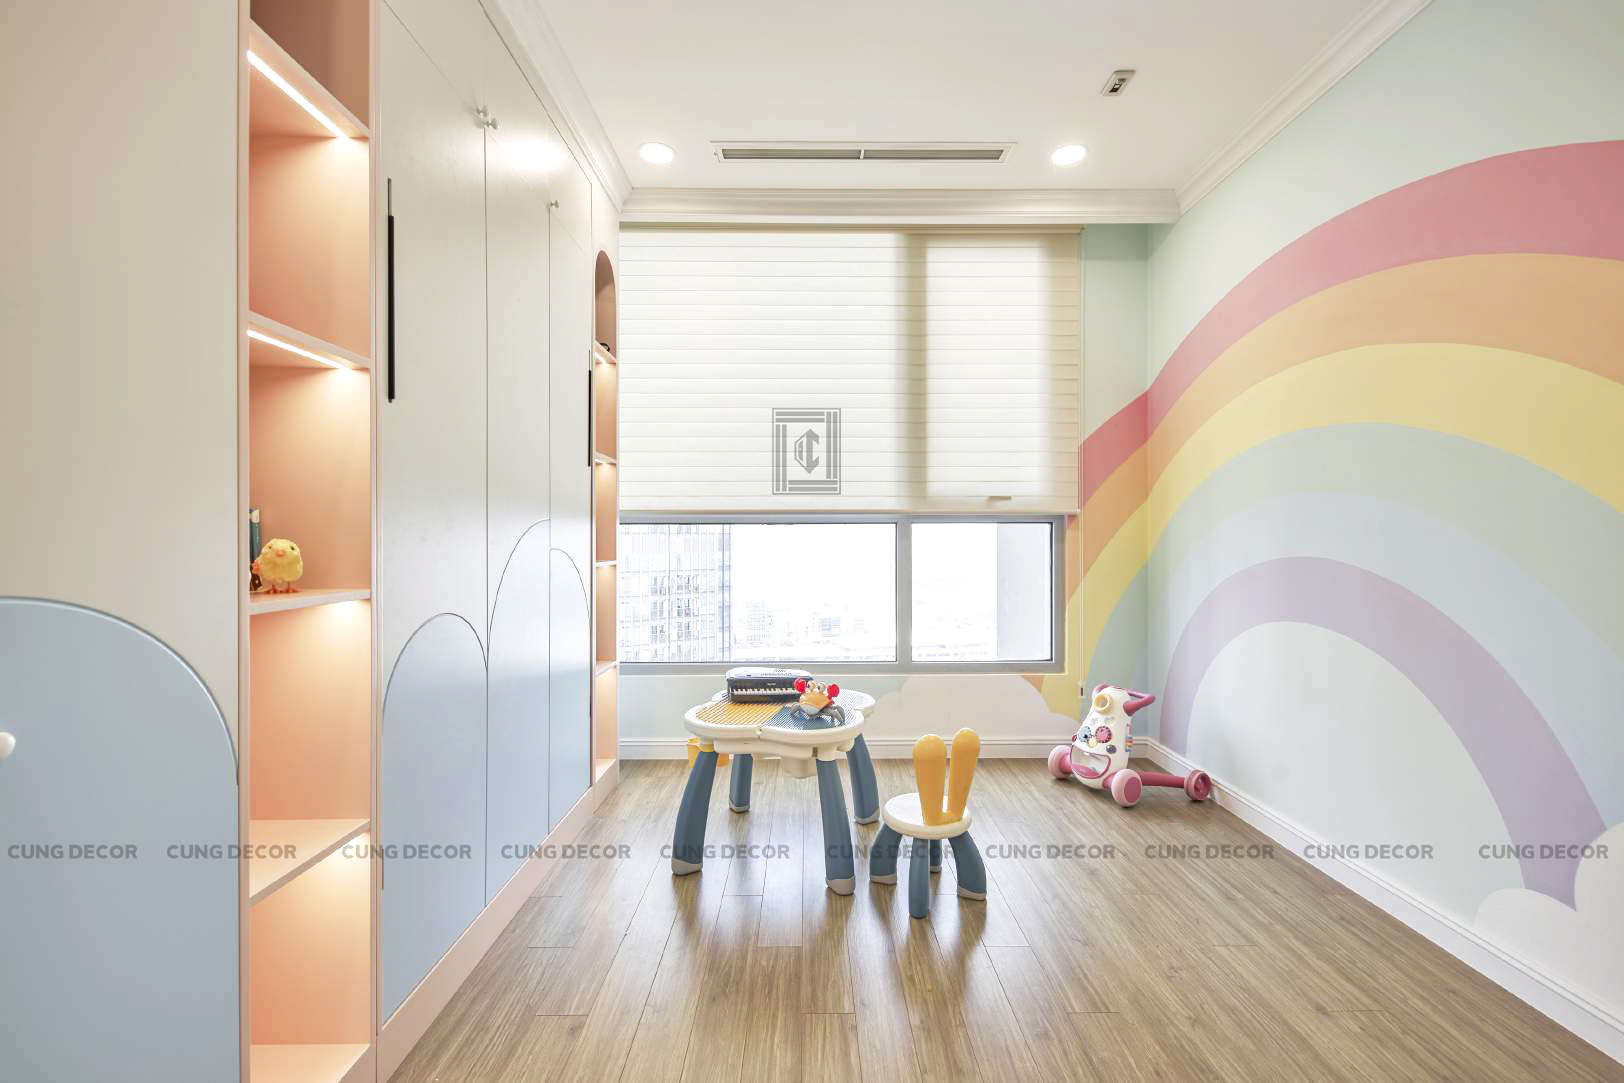 Hoàn thiện nội thất phòng cho bé Căn hộ Landmark 81 Vinhomes Central Park phong cách Tân cổ điển Neo Classic